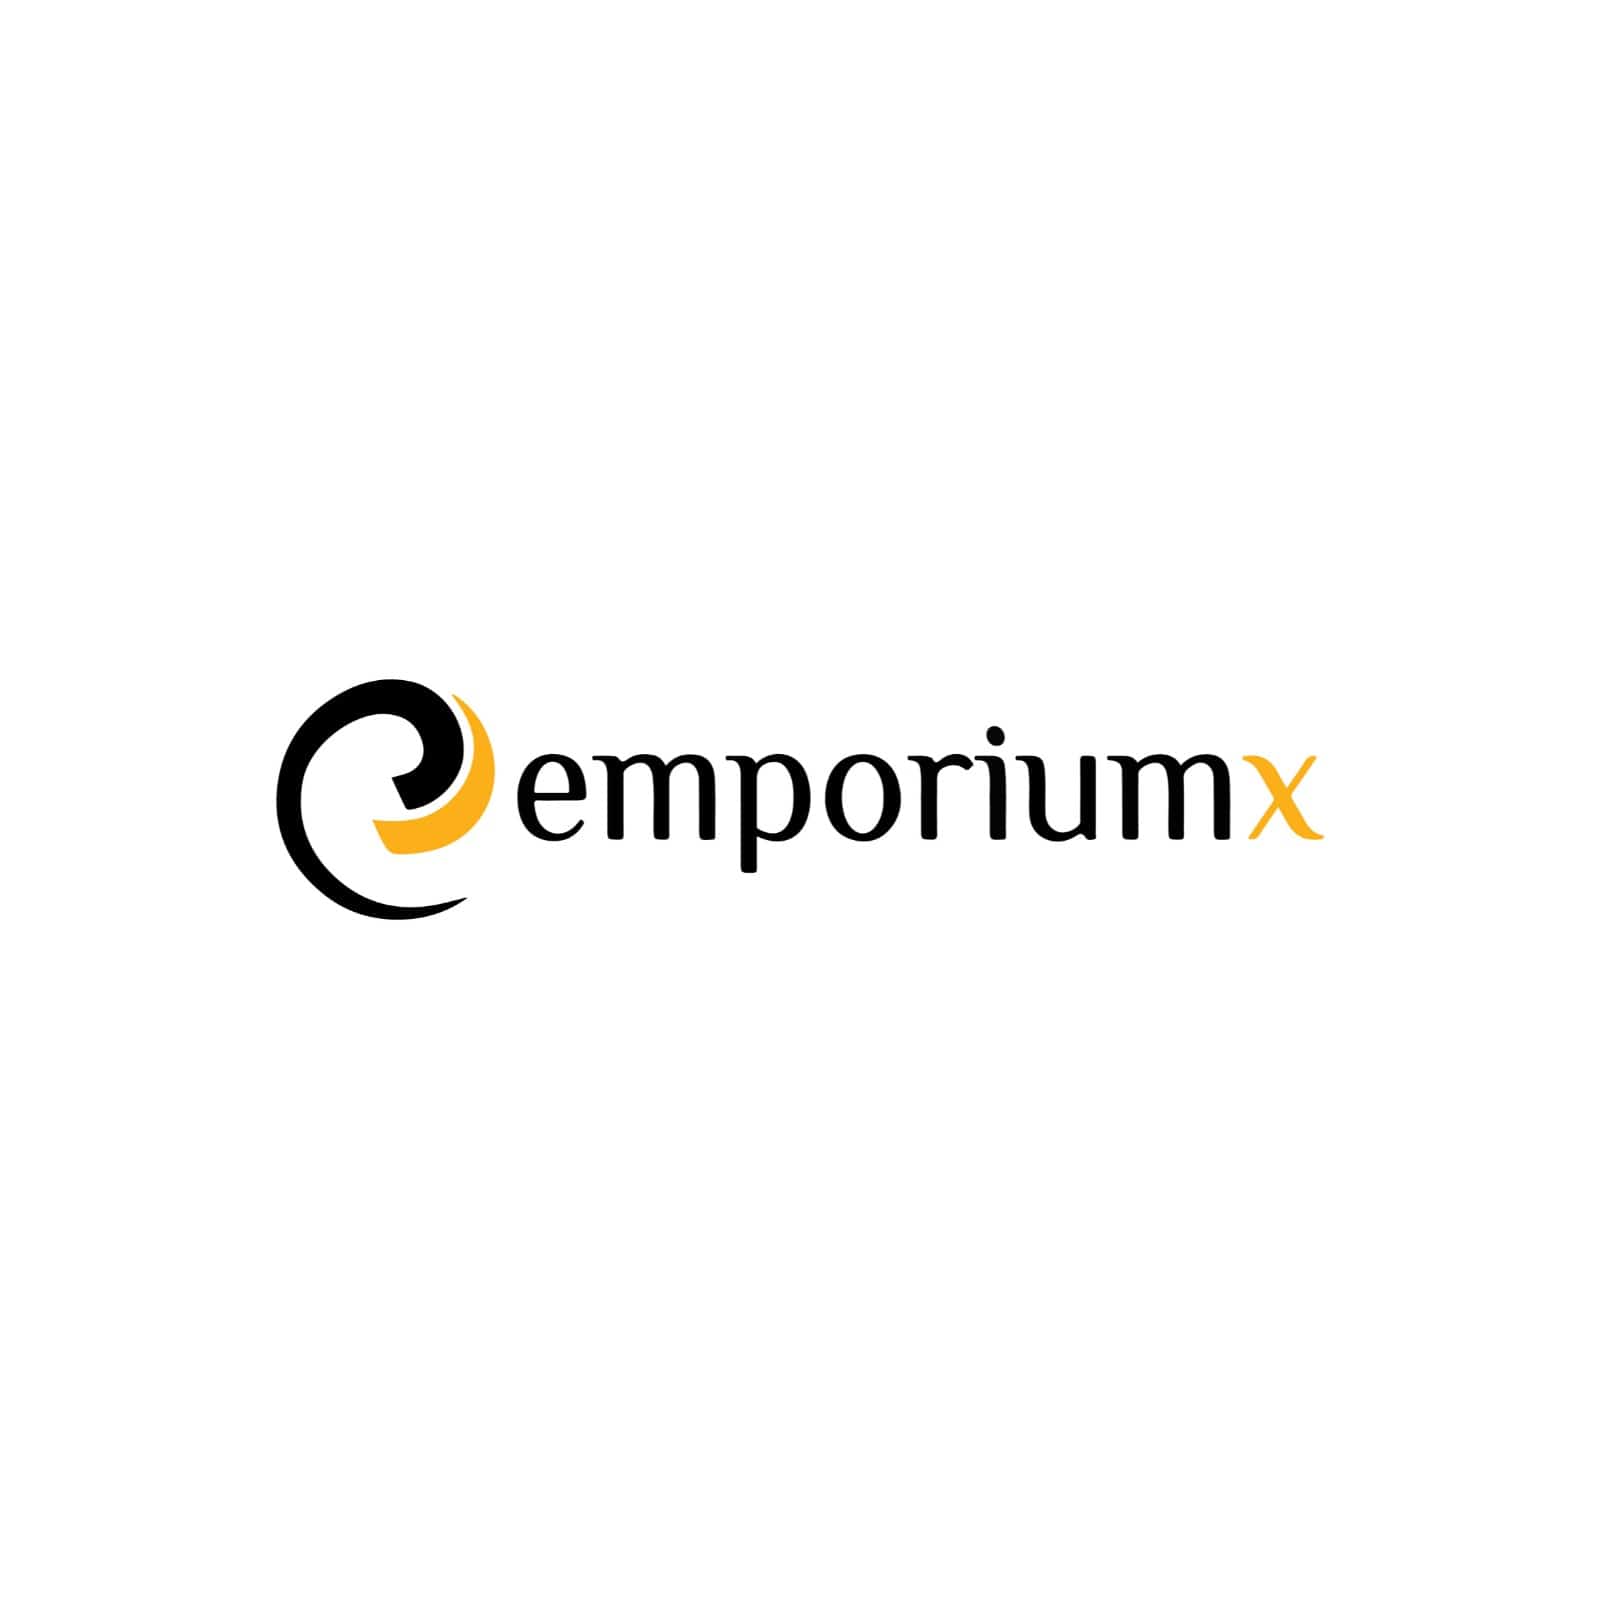 Emporiumx